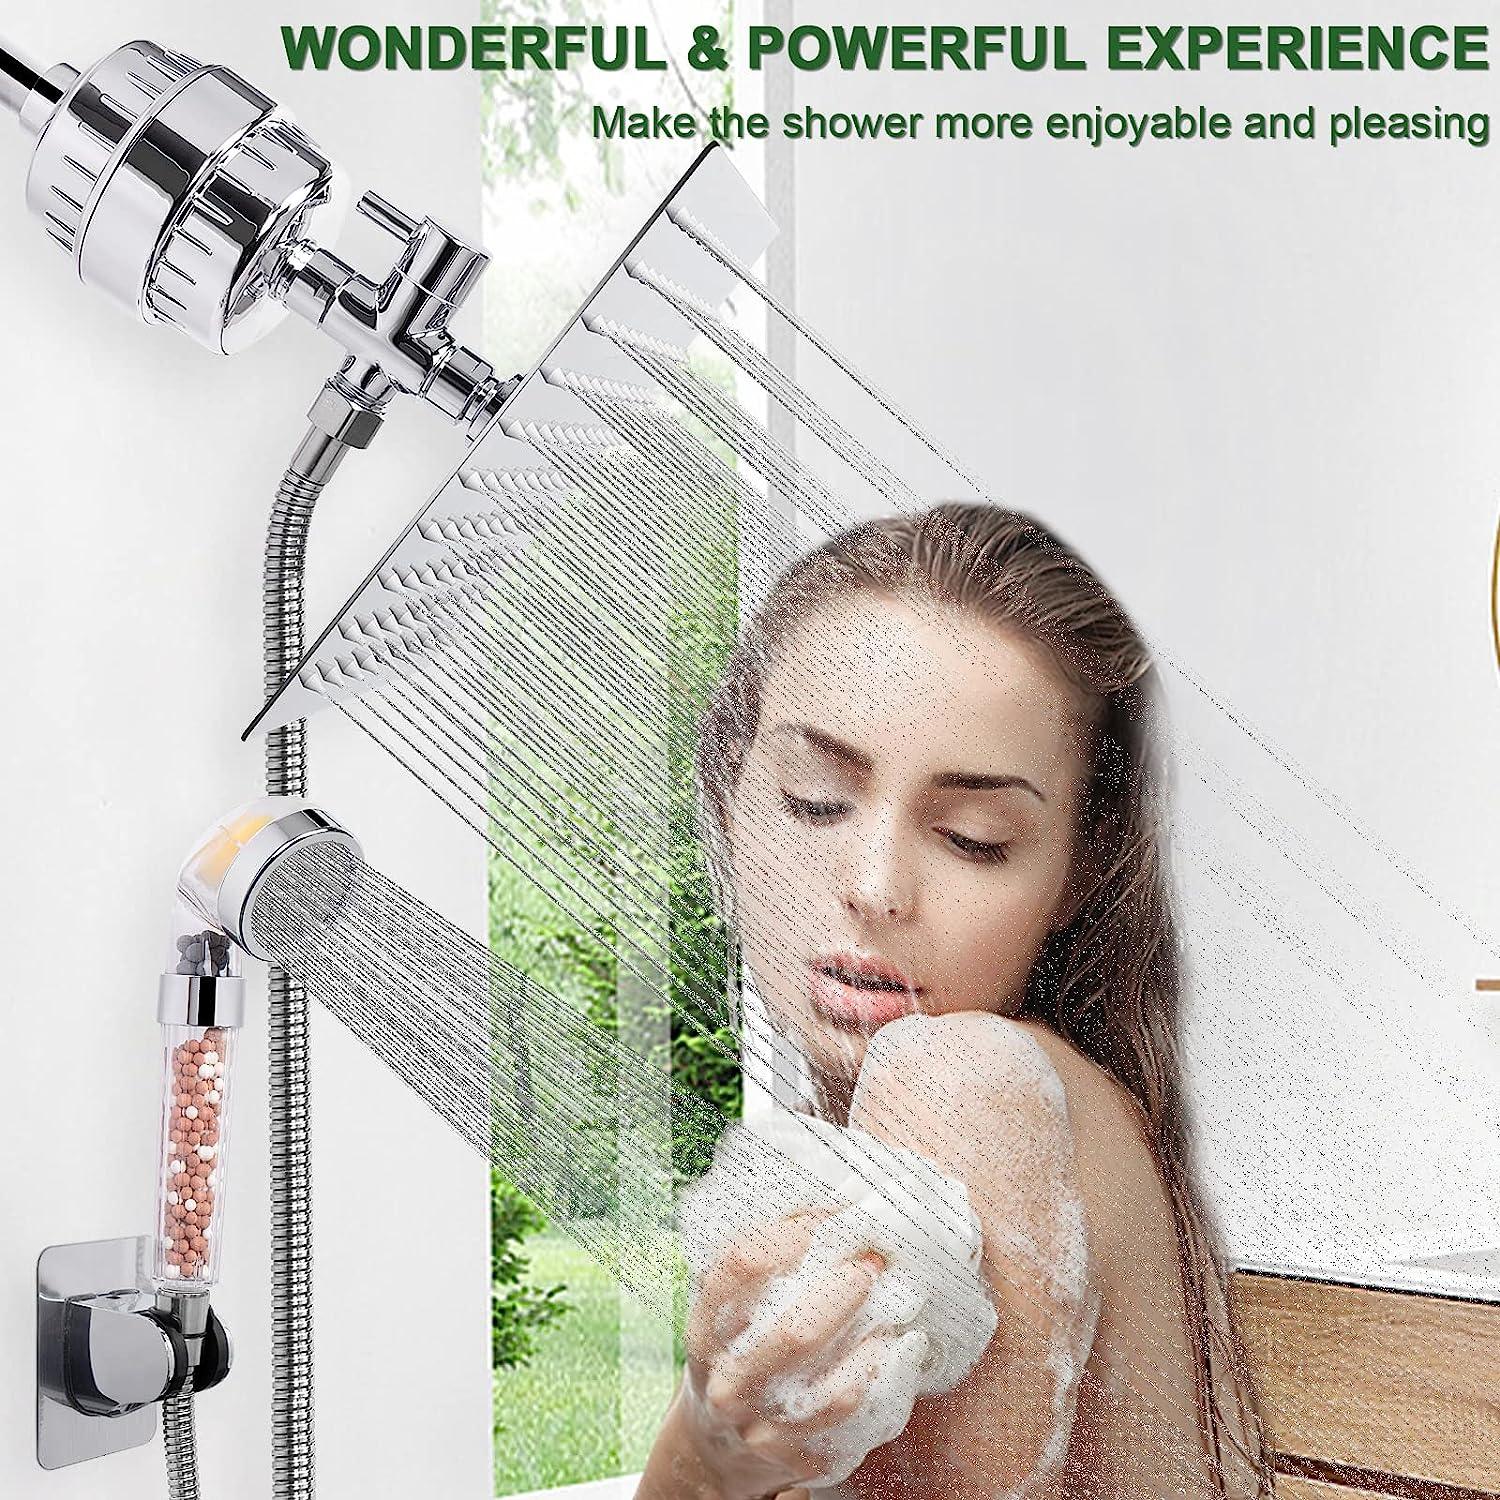 HarJue Cabezal de ducha de filtro, cabezal de ducha de alta presión con filtro - VIRTUAL MUEBLES